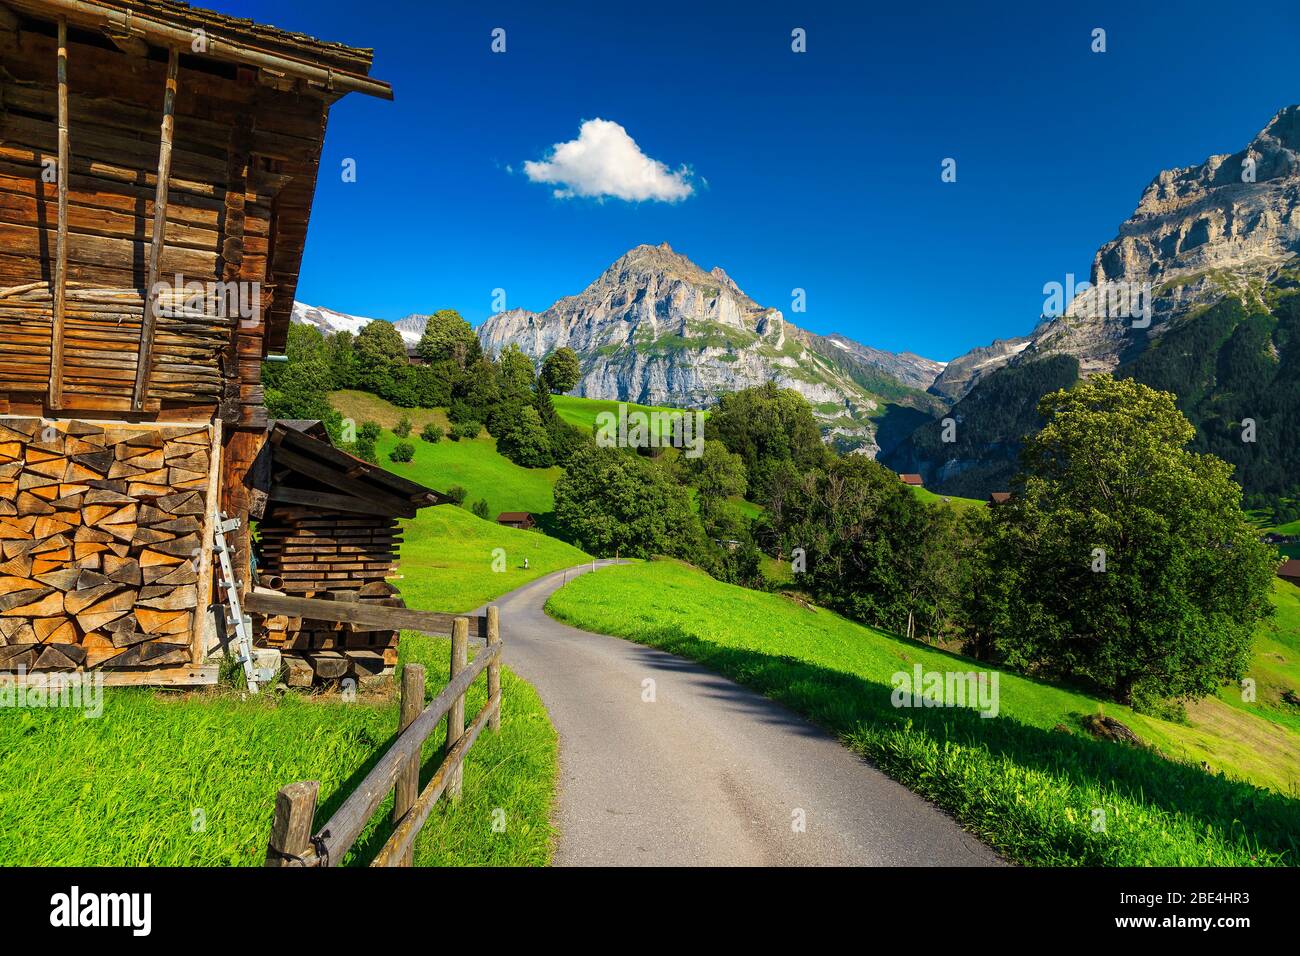 Stretto sentiero rurale con casette in legno, campi verdi e montagne sullo sfondo, Grindelwald villaggio, Oberland Bernese, Svizzera, Europa Foto Stock